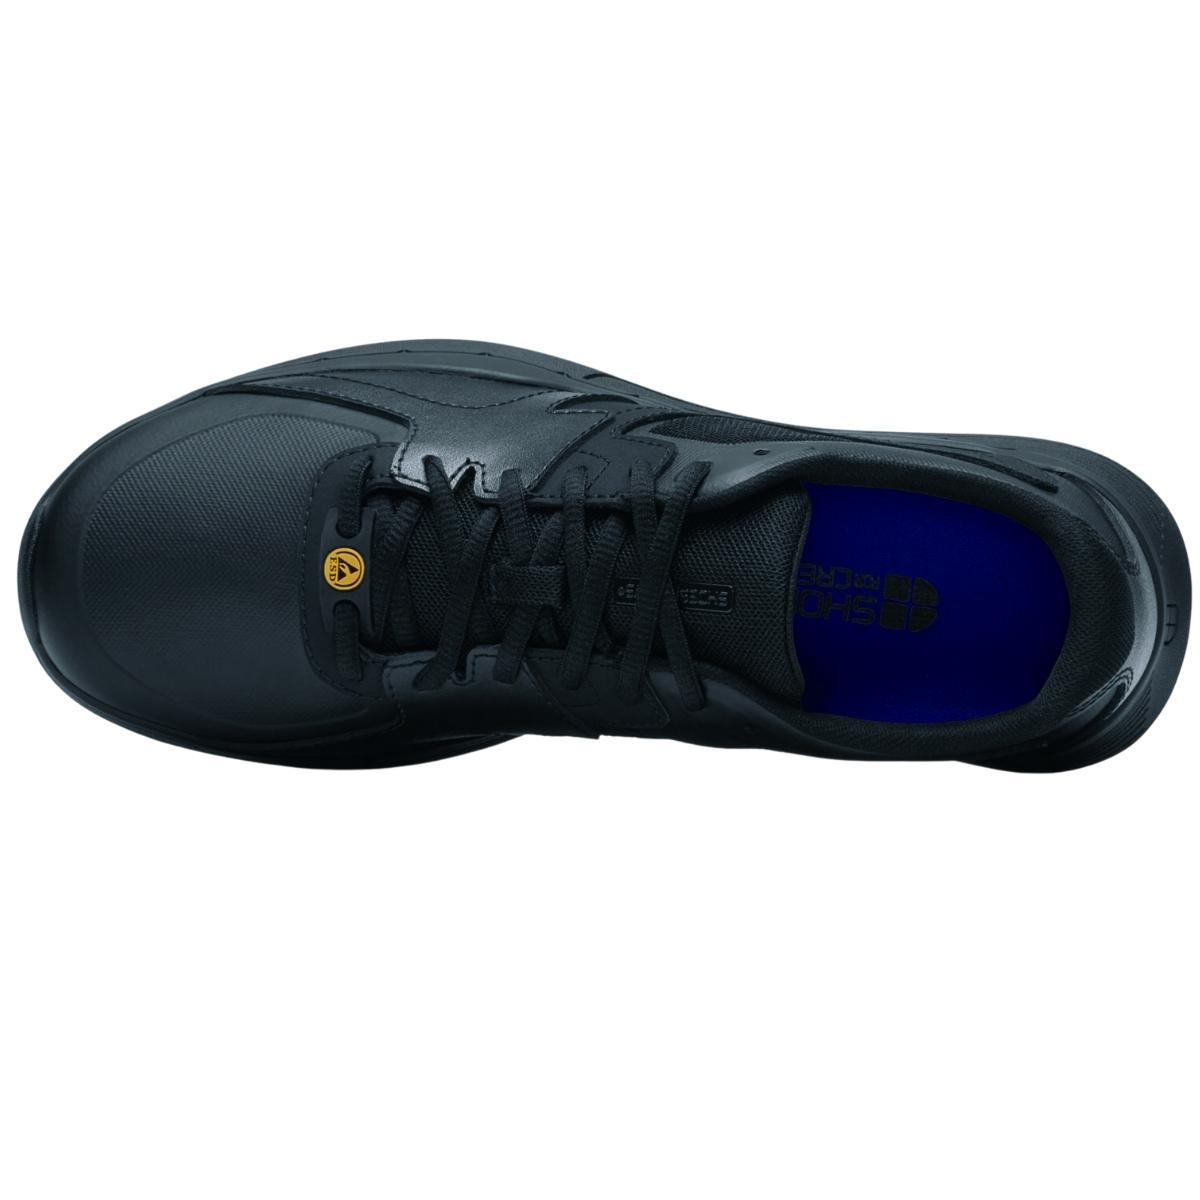 Zapato deportivo negro en piel y nylon antideslizante